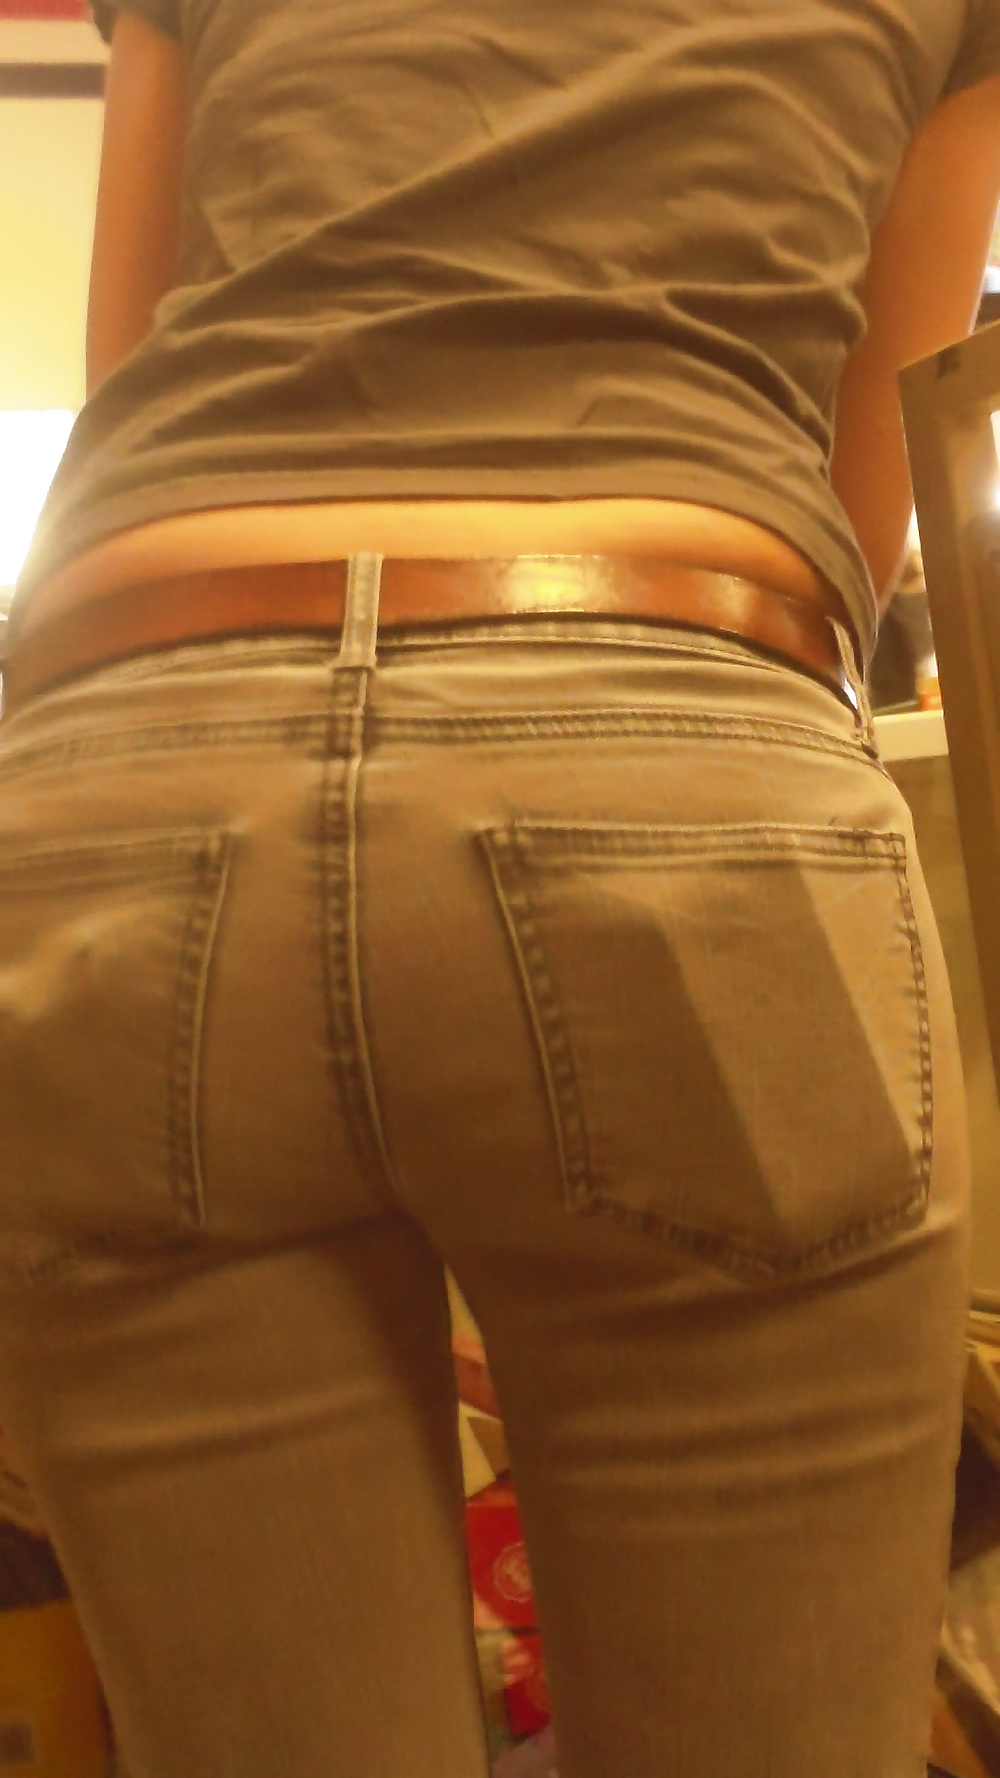 Popular teen girls ass & butt in jeans Part 6 #32009950